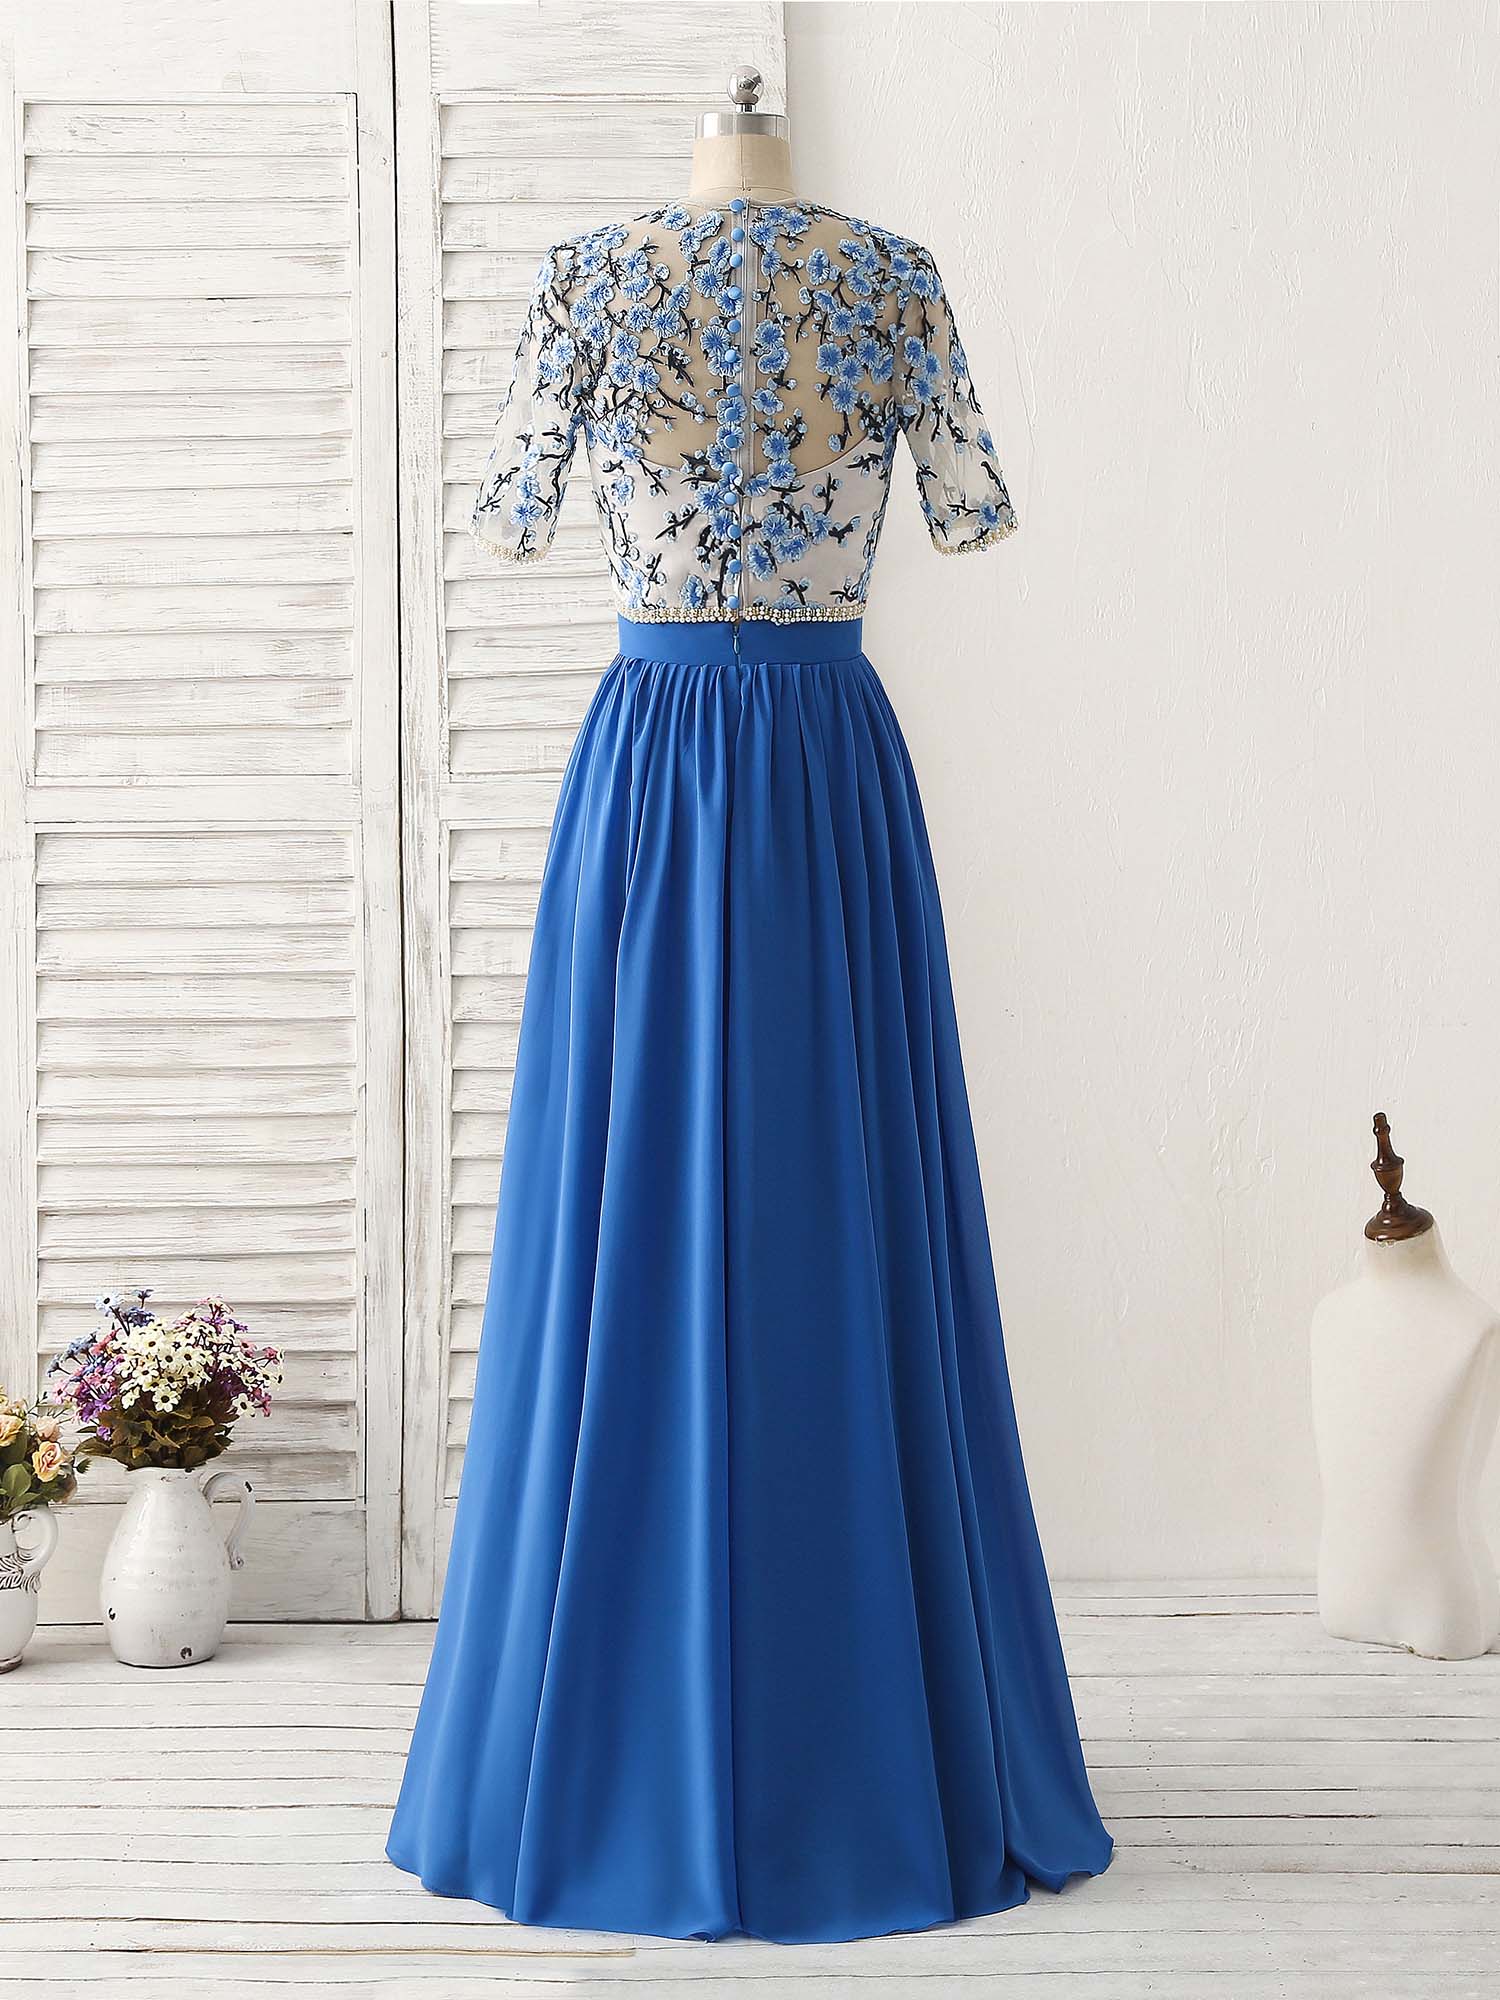 Party Dress Boho, Unique Blue Two Pieces Long Prom Dress Applique Formal Dress